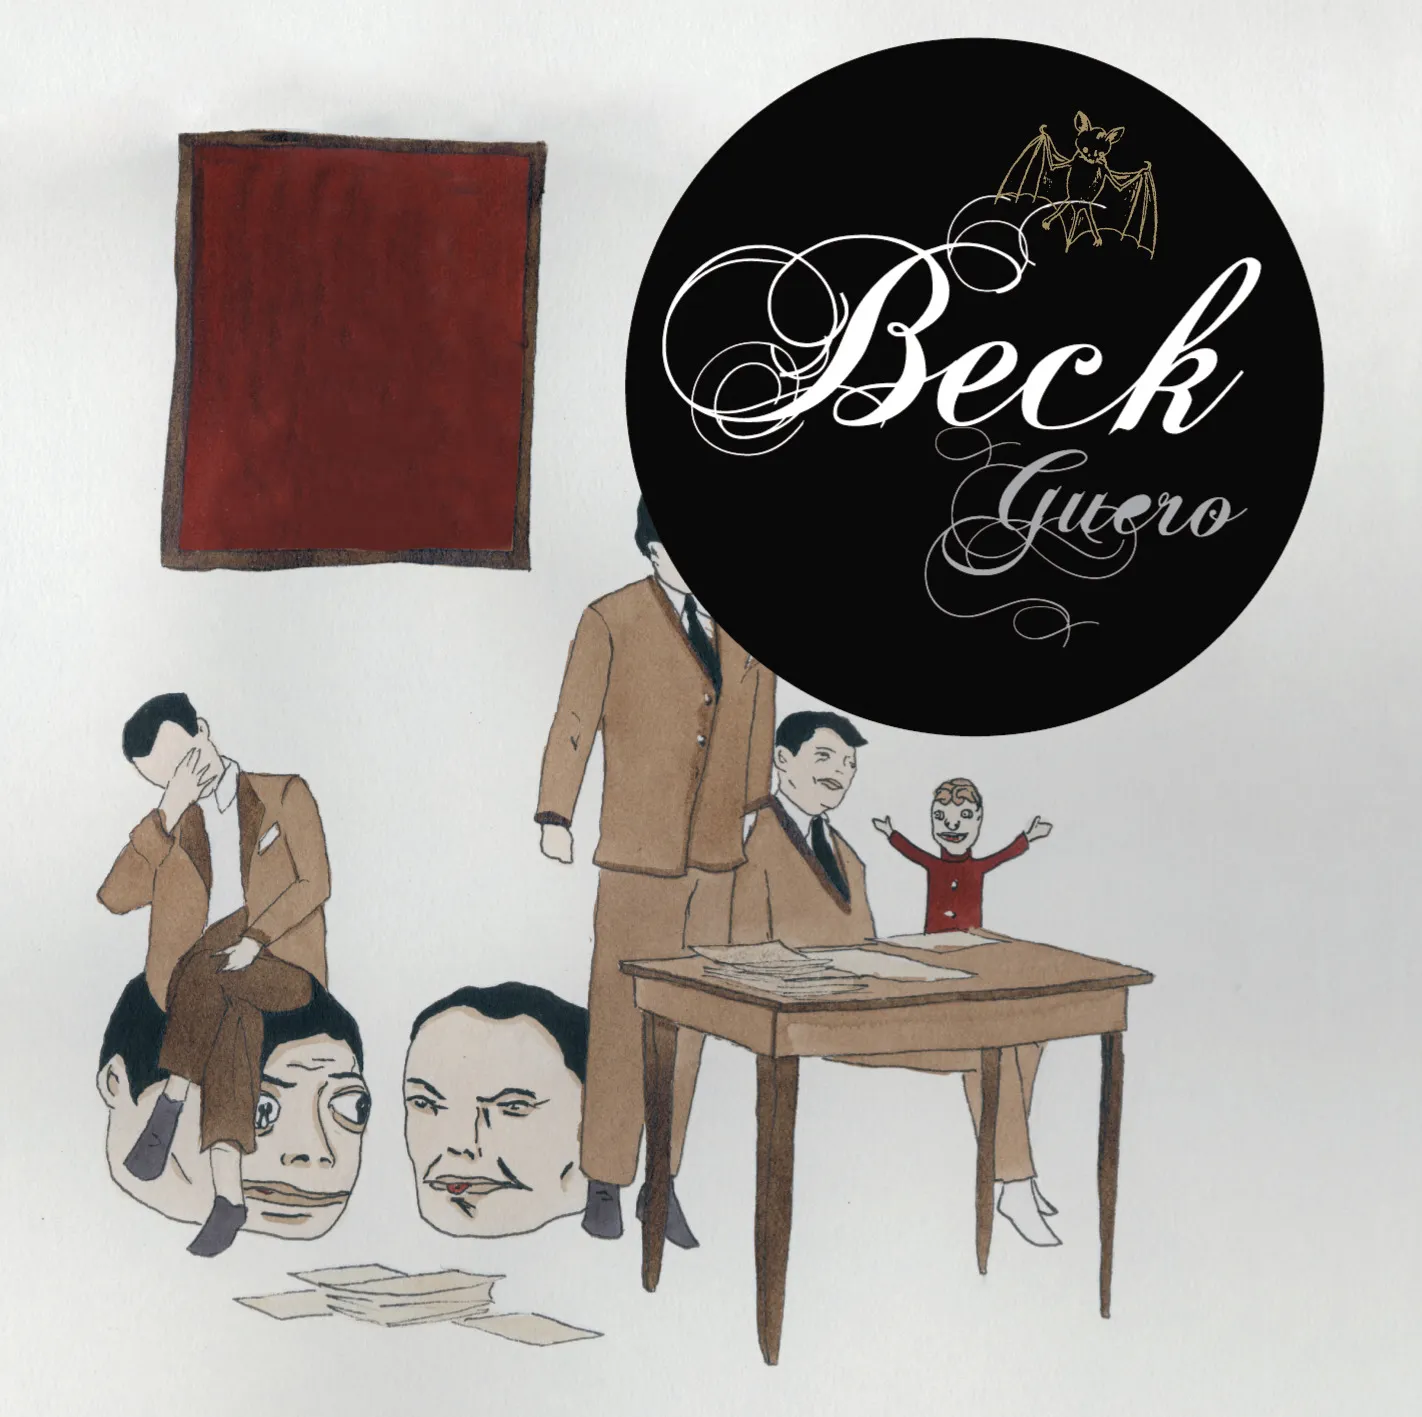 <strong>Beck - Guero</strong> (Vinyl LP - black)